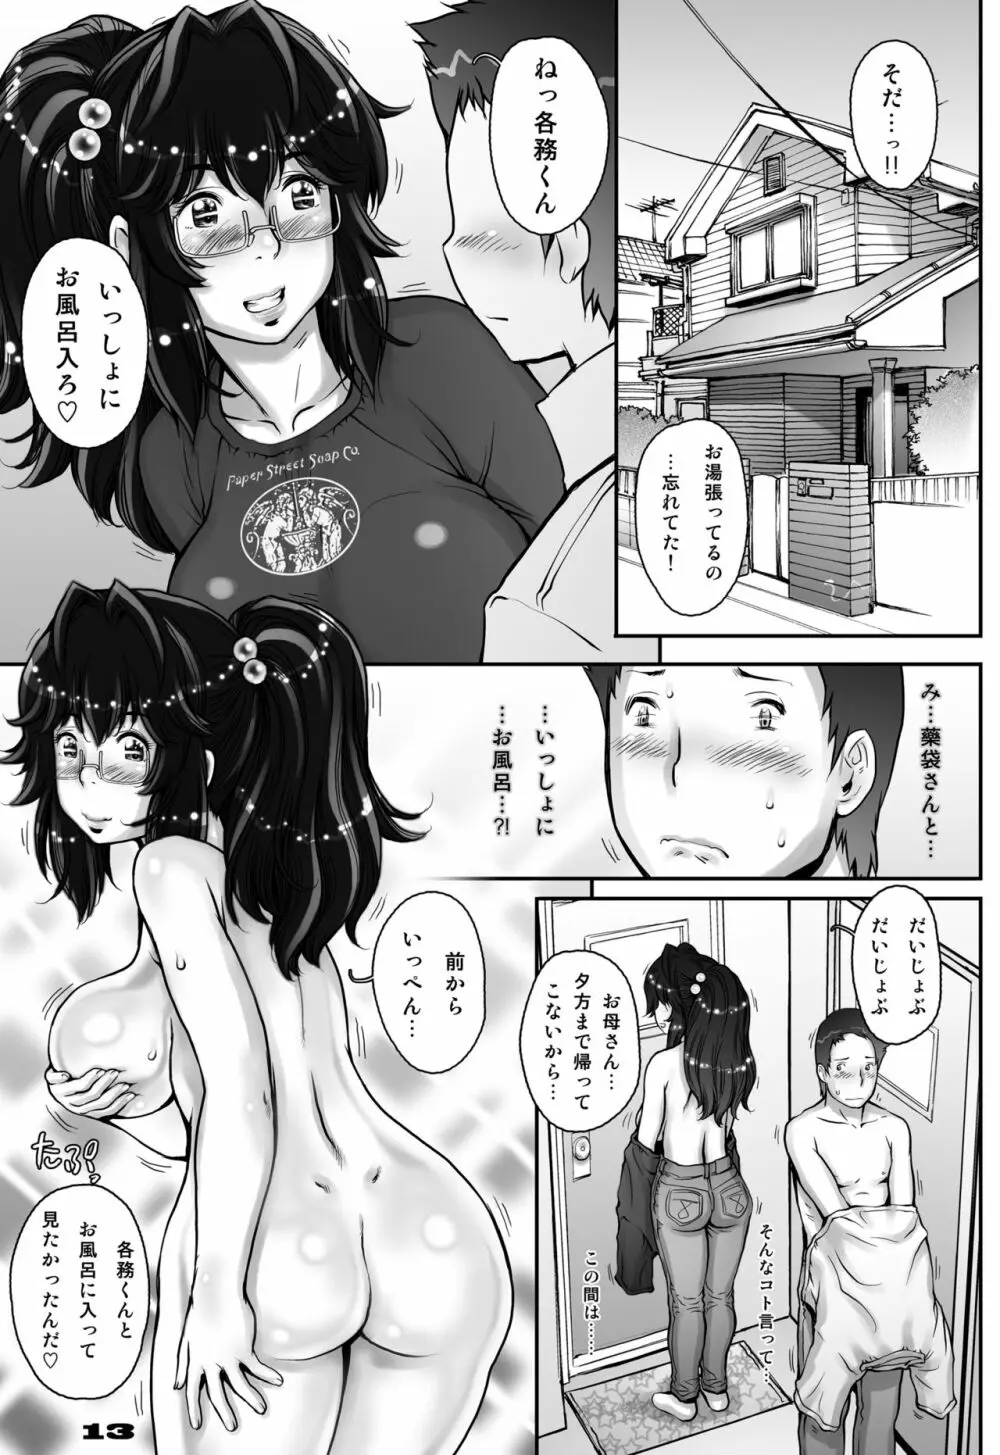 ぷり☆くるっ #1 〜シュレーディンガーのミナイさん〜 13ページ